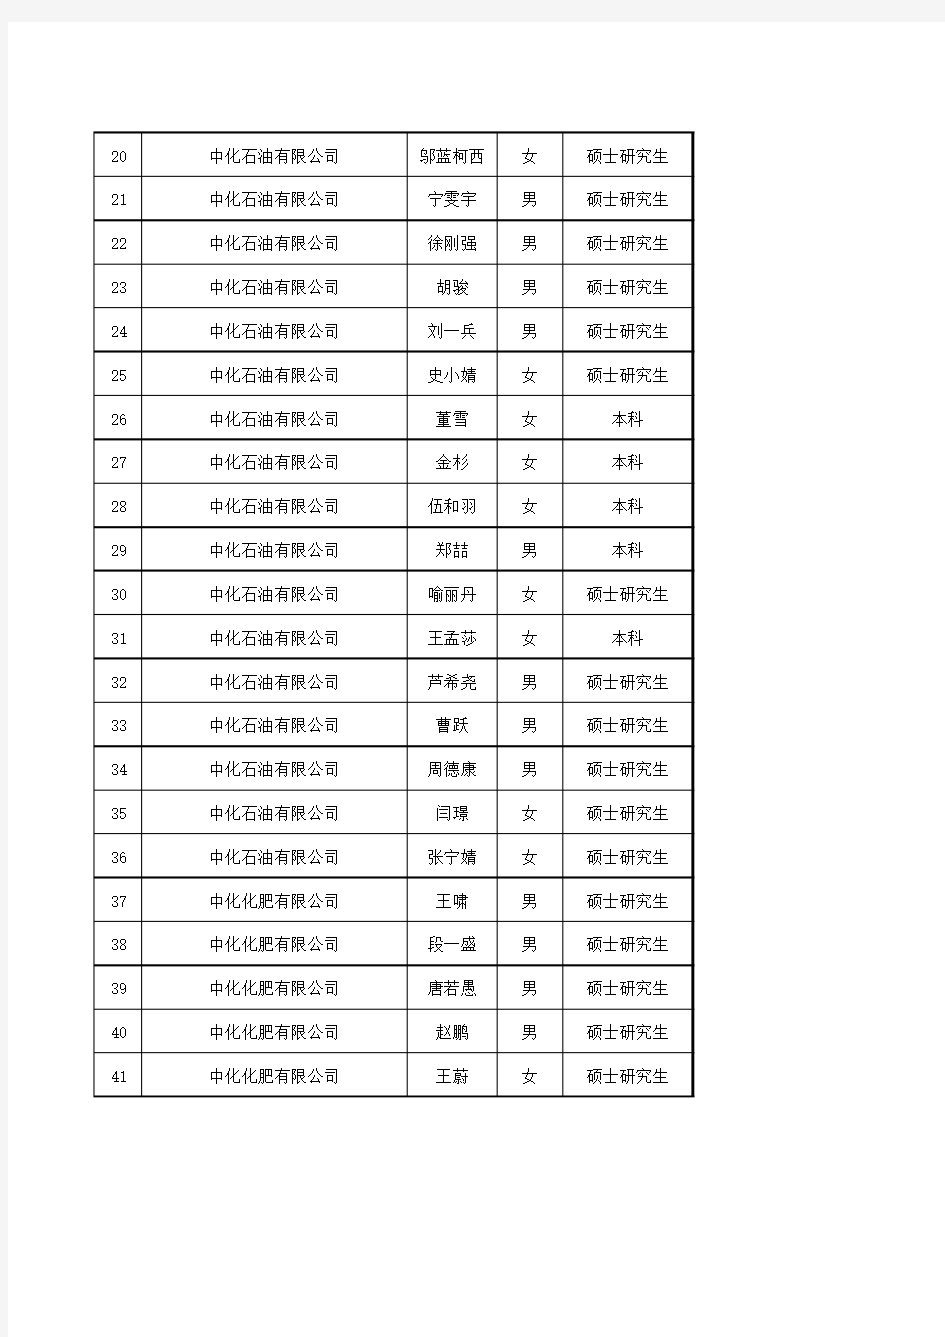 中国中化集团公司2016年度拟接收毕业生情况公示